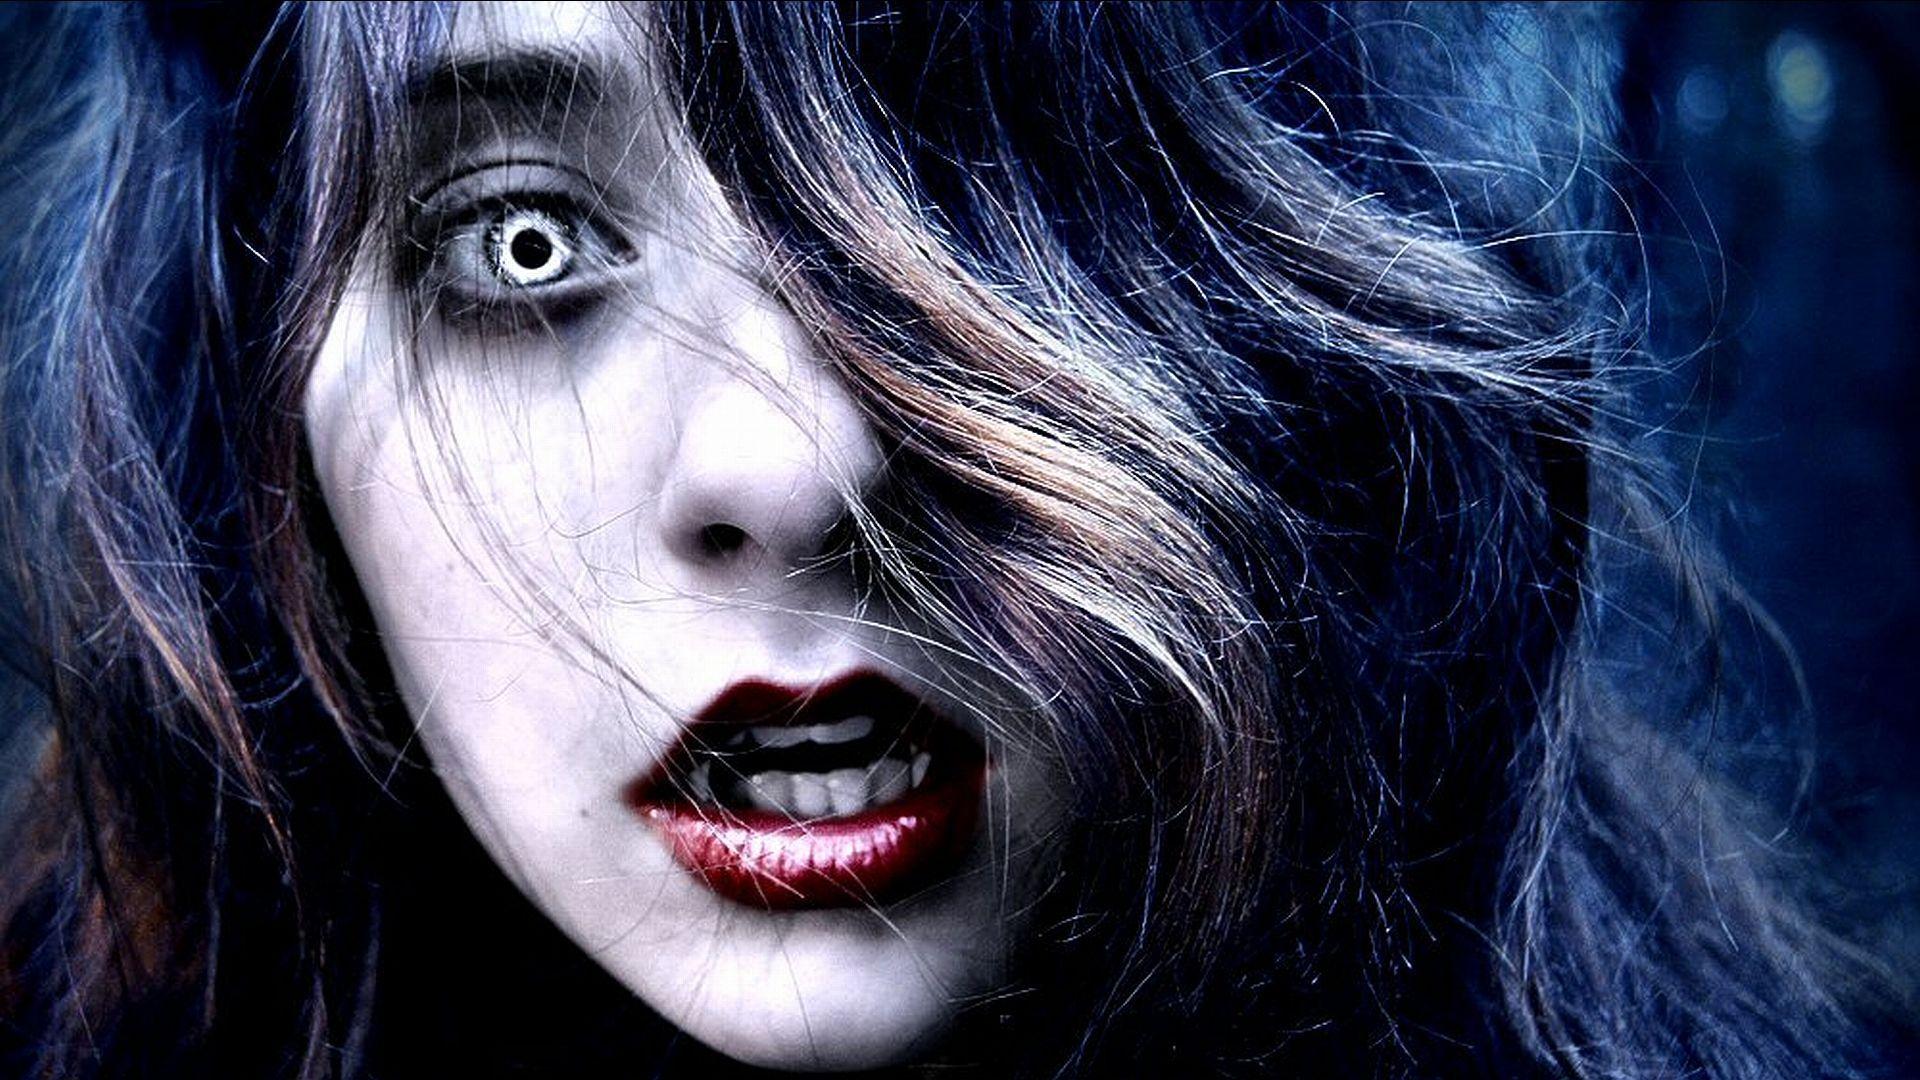 Image for Vampire Girl Full HD Wallpaper. Vampire girls, Vampire art, Vampire picture